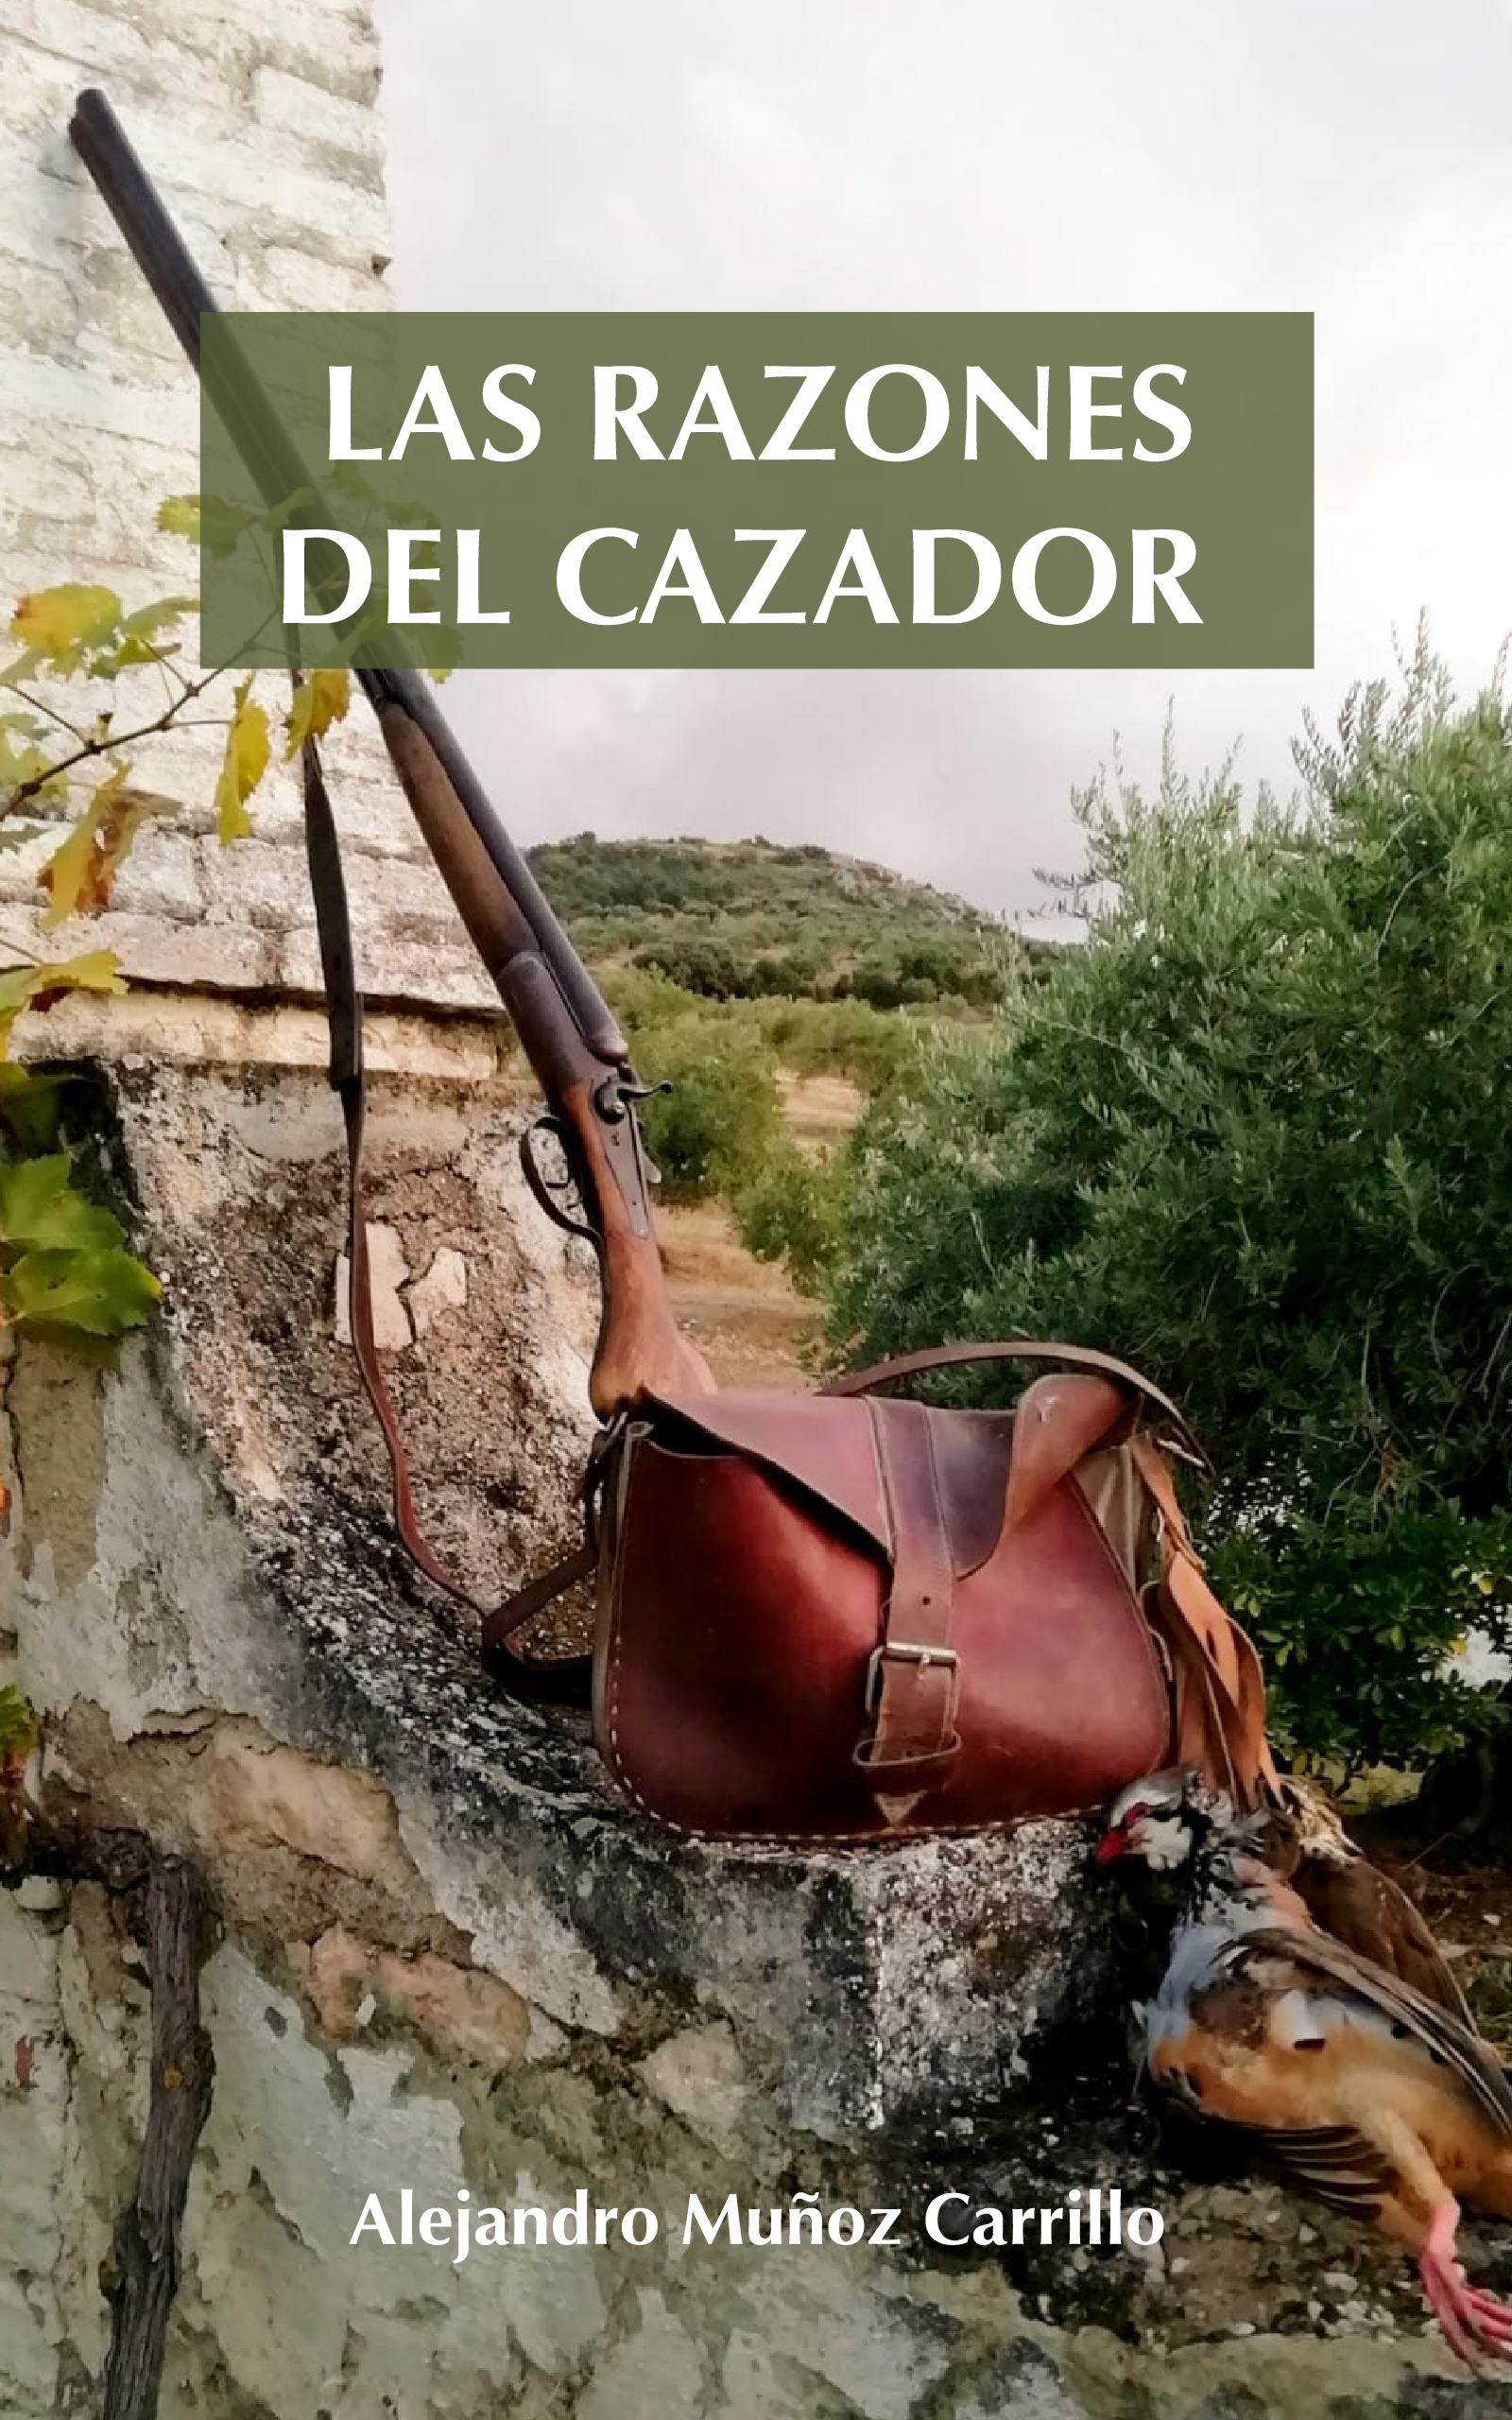 Las razones del cazador, de Alejandro Muñoz Carrillo